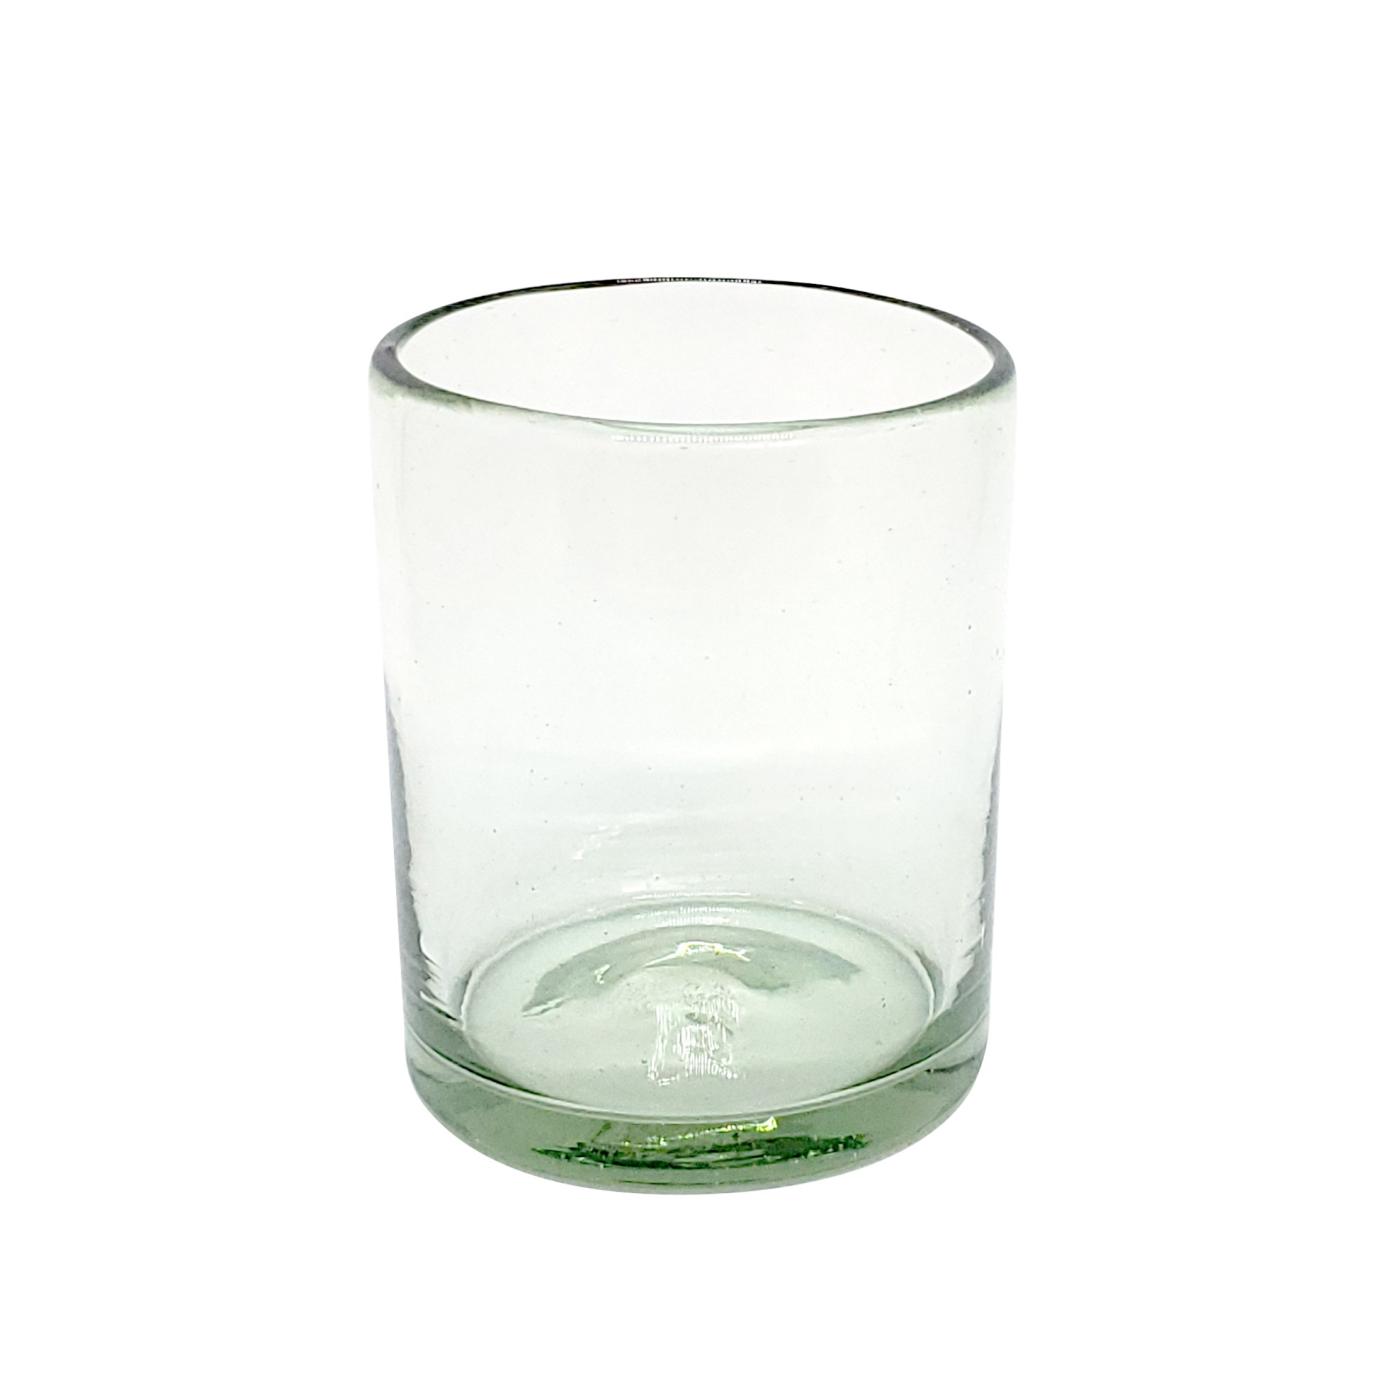 Vasos de Vidrio Soplado al Mayoreo / vasos chicos transparentes / Para una apariencia más tradicional, éstos vasos de vidrio soplado son creados de manera 100% artesanal.